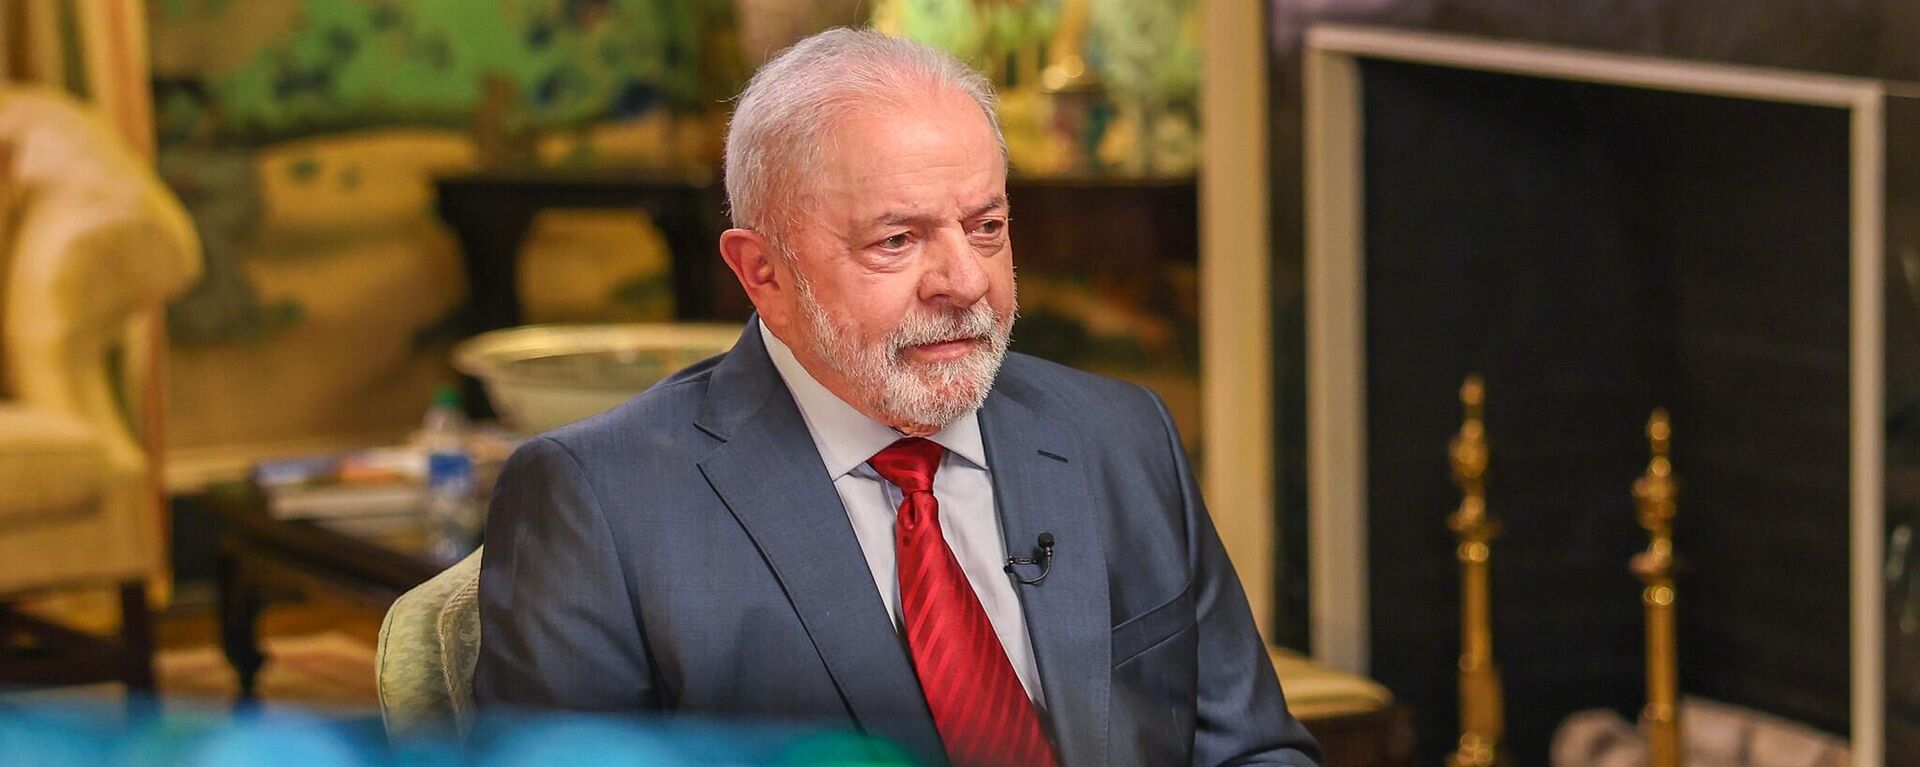 Lula concede entrevista durante viagem aos Estados Unidos. Washington, 10 de fevereiro de 2023 - Sputnik Brasil, 1920, 10.02.2023